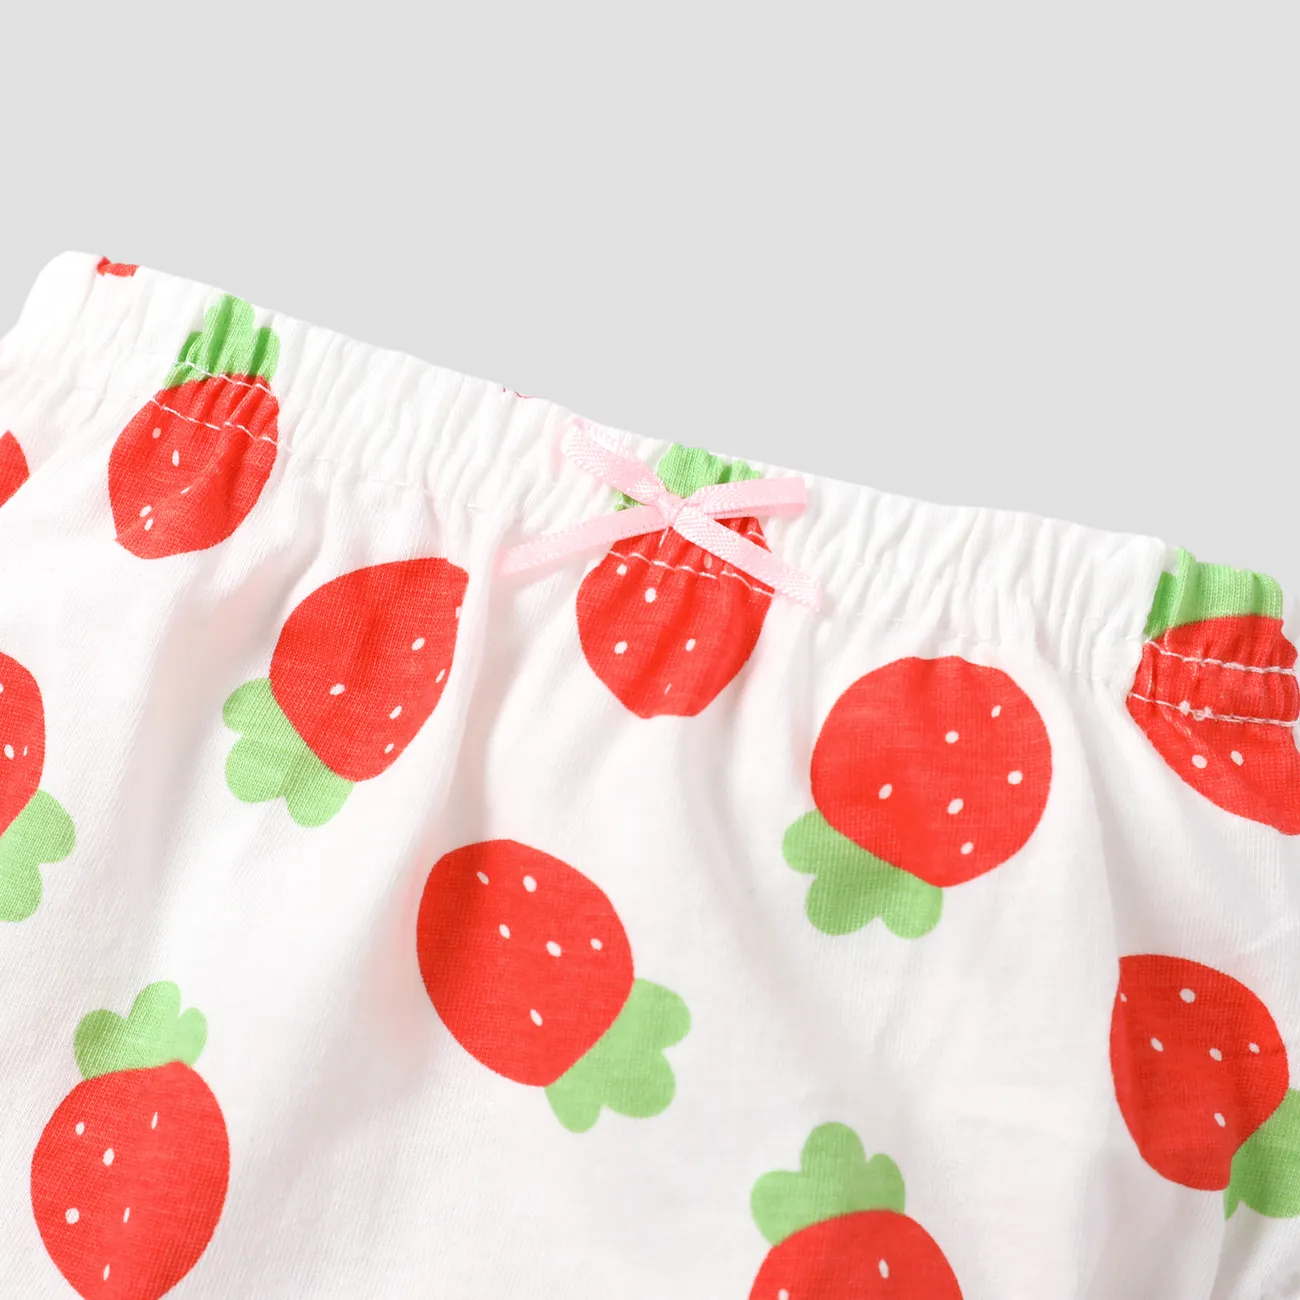 مجموعة ملابس داخلية للفتيات بحواف فطرية ومصنوعة من 100٪ قطن، تحتوي على فواكه وخضروات حلوة. أحمر big image 1